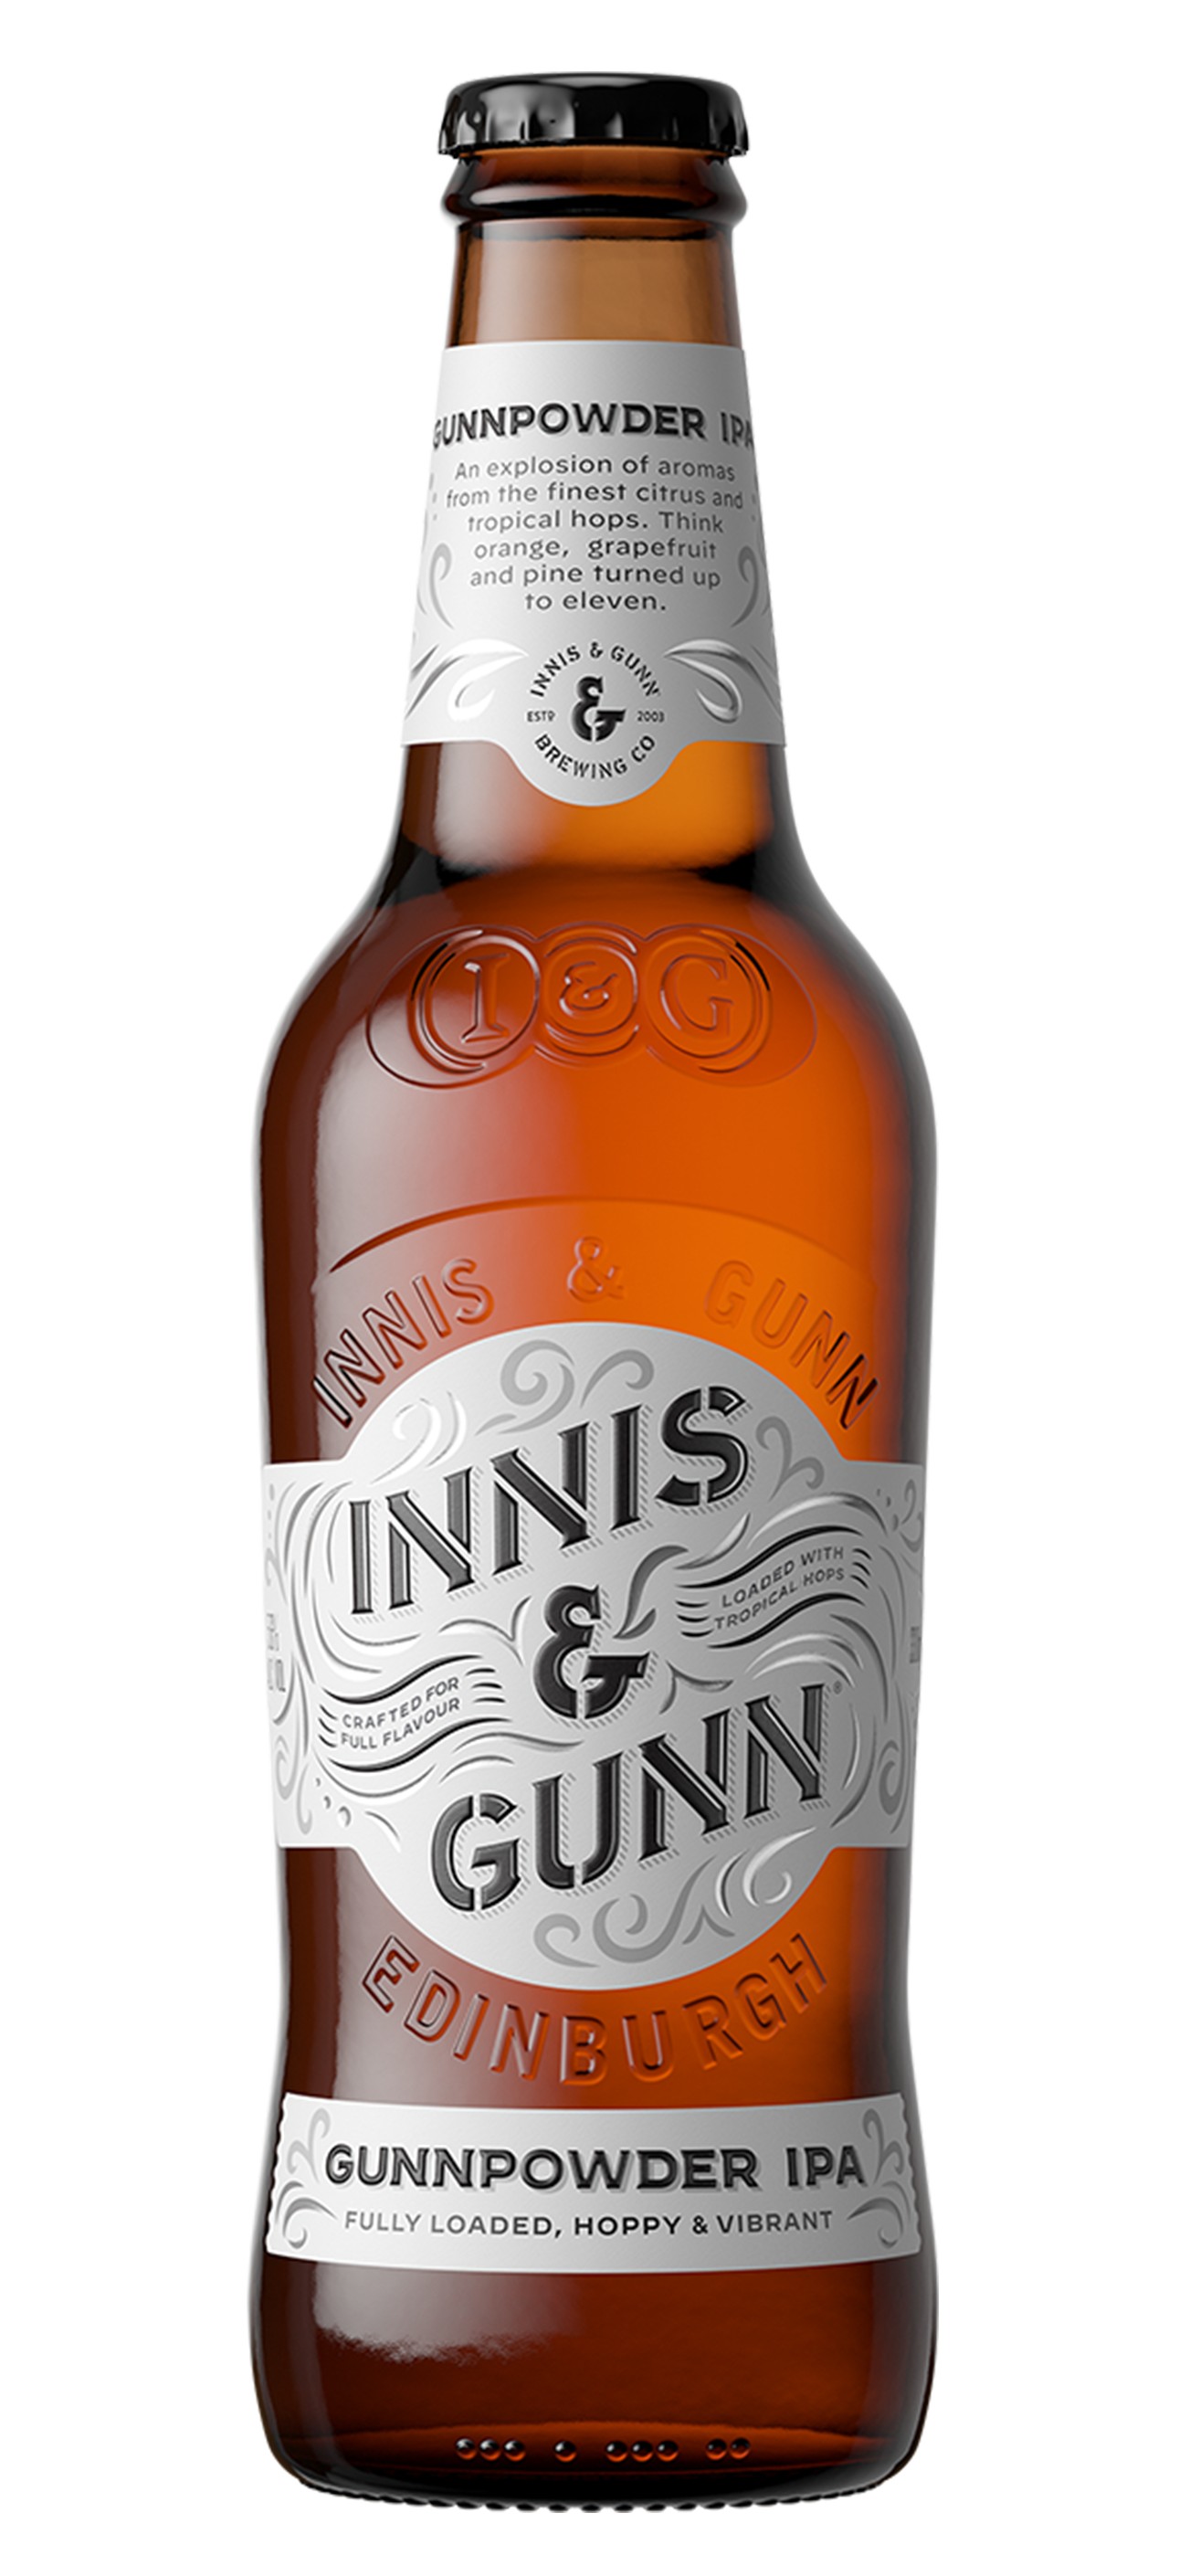 Innis & Gunn - Gunnpowder IPA